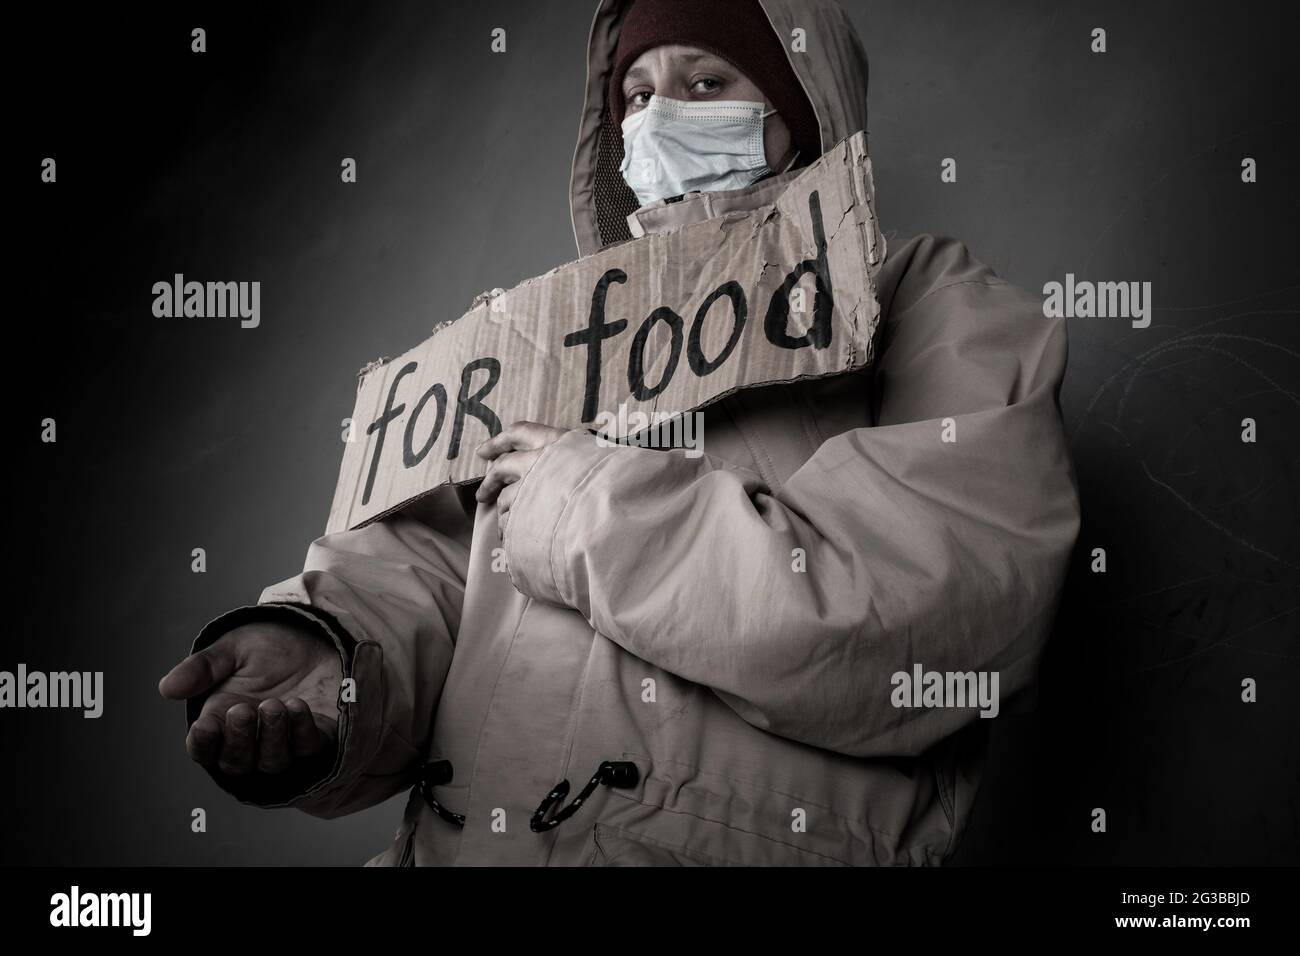 sans-abri pauvre mendiant demande de l'aide et de la nourriture, sans emploi dans le désespoir. Banque D'Images